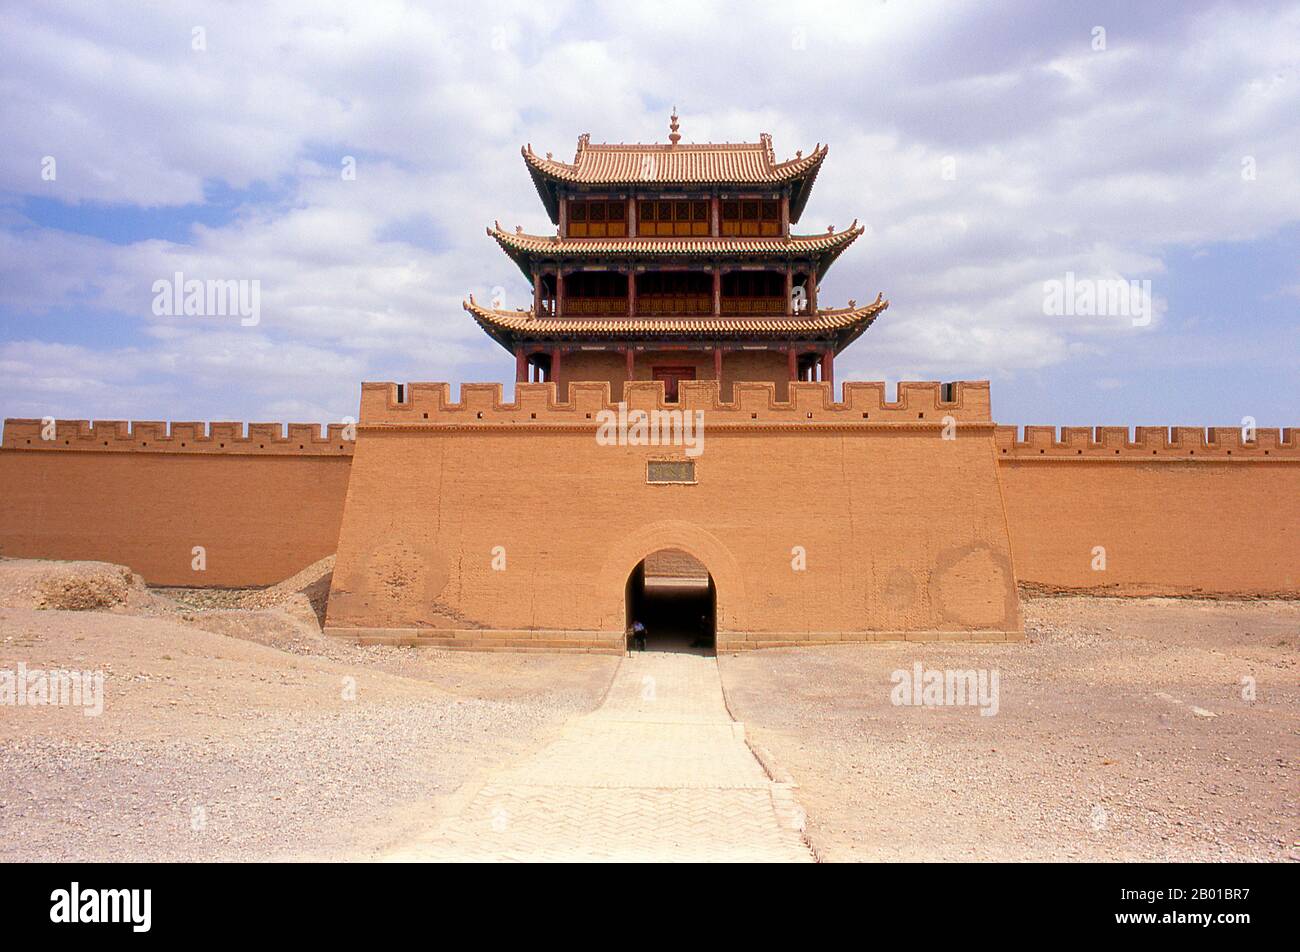 Cina: Porta occidentale e torre a Jiayuguan Fort, provincia di Gansu. Jiayuguan, il “primo e più grande passo sotto il cielo”, fu completato nel 1372 su ordine di Zhu Yuanzhang, il primo imperatore Ming (1368-98), per segnare la fine della Grande Muraglia Ming. Era anche il limite stesso della civiltà cinese, e gli inizi delle terre “barbariche” esterne. Per secoli il forte non era solo di importanza strategica per i cinesi Han, ma anche di significato culturale. Questo era l'ultimo luogo civilizzato prima delle tenebre esterne, e quelli che procedono oltre affrontarono una vita di esilio. Foto Stock